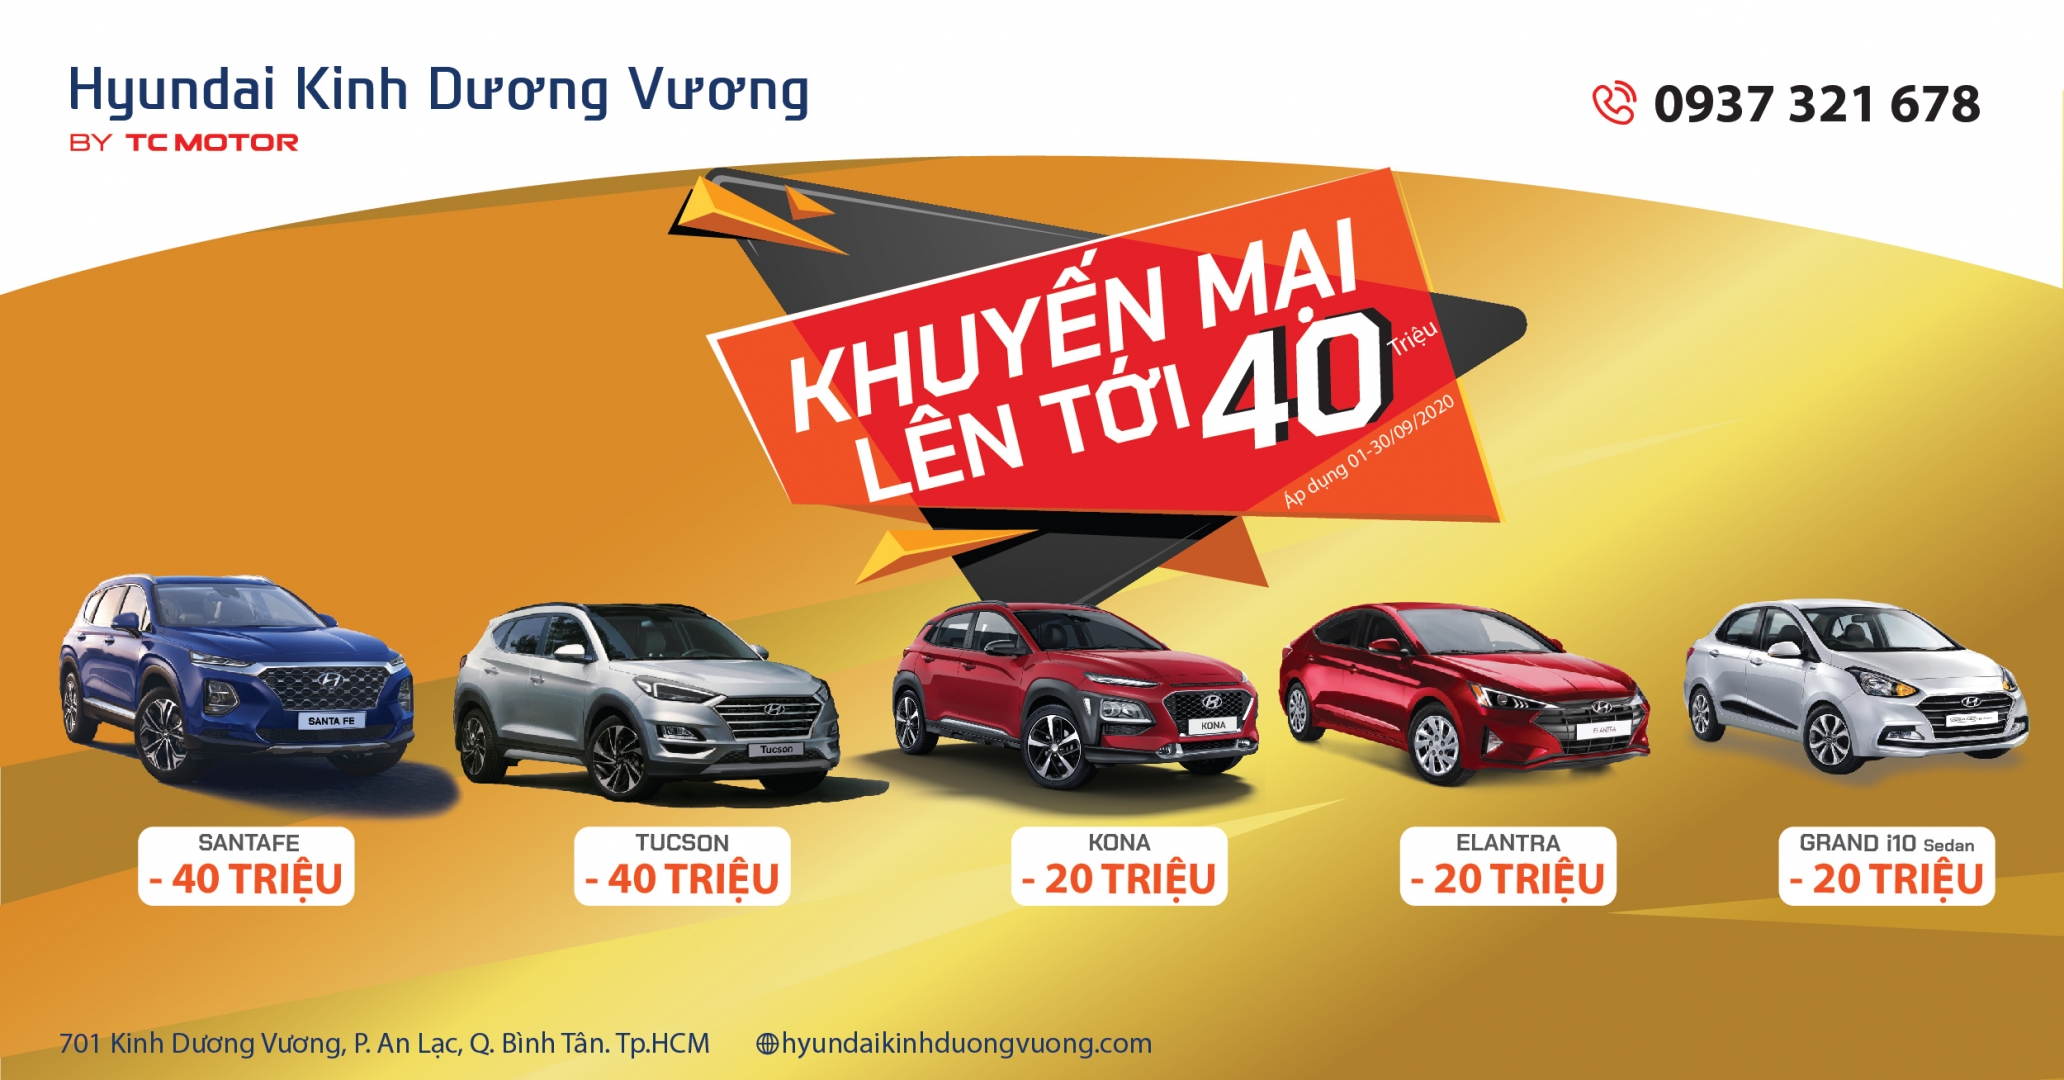 Hyundai Kinh Dương Vương thực hiện chương trình khuyến mại lên đến 40 triệu trong tháng 9